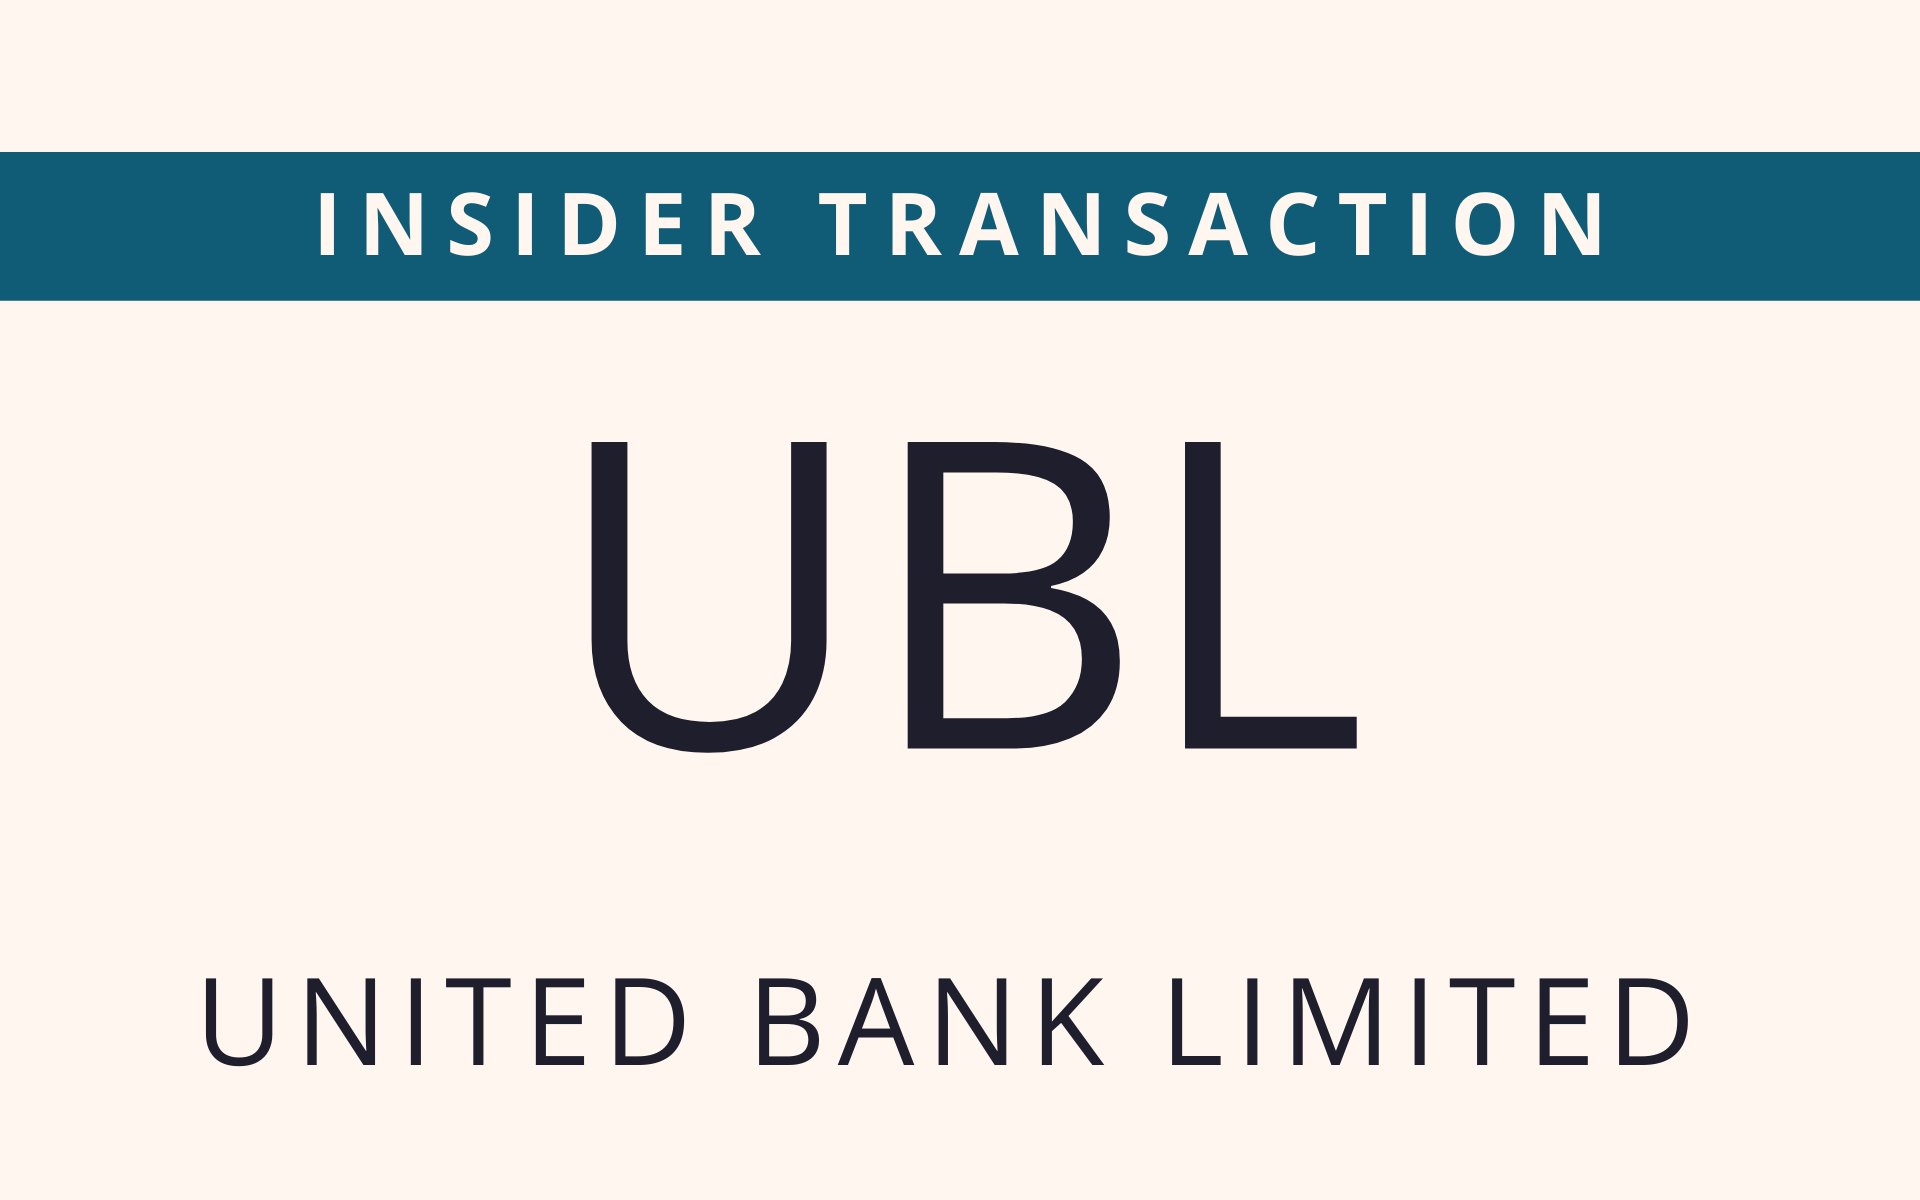 UBL - Insider Transaction